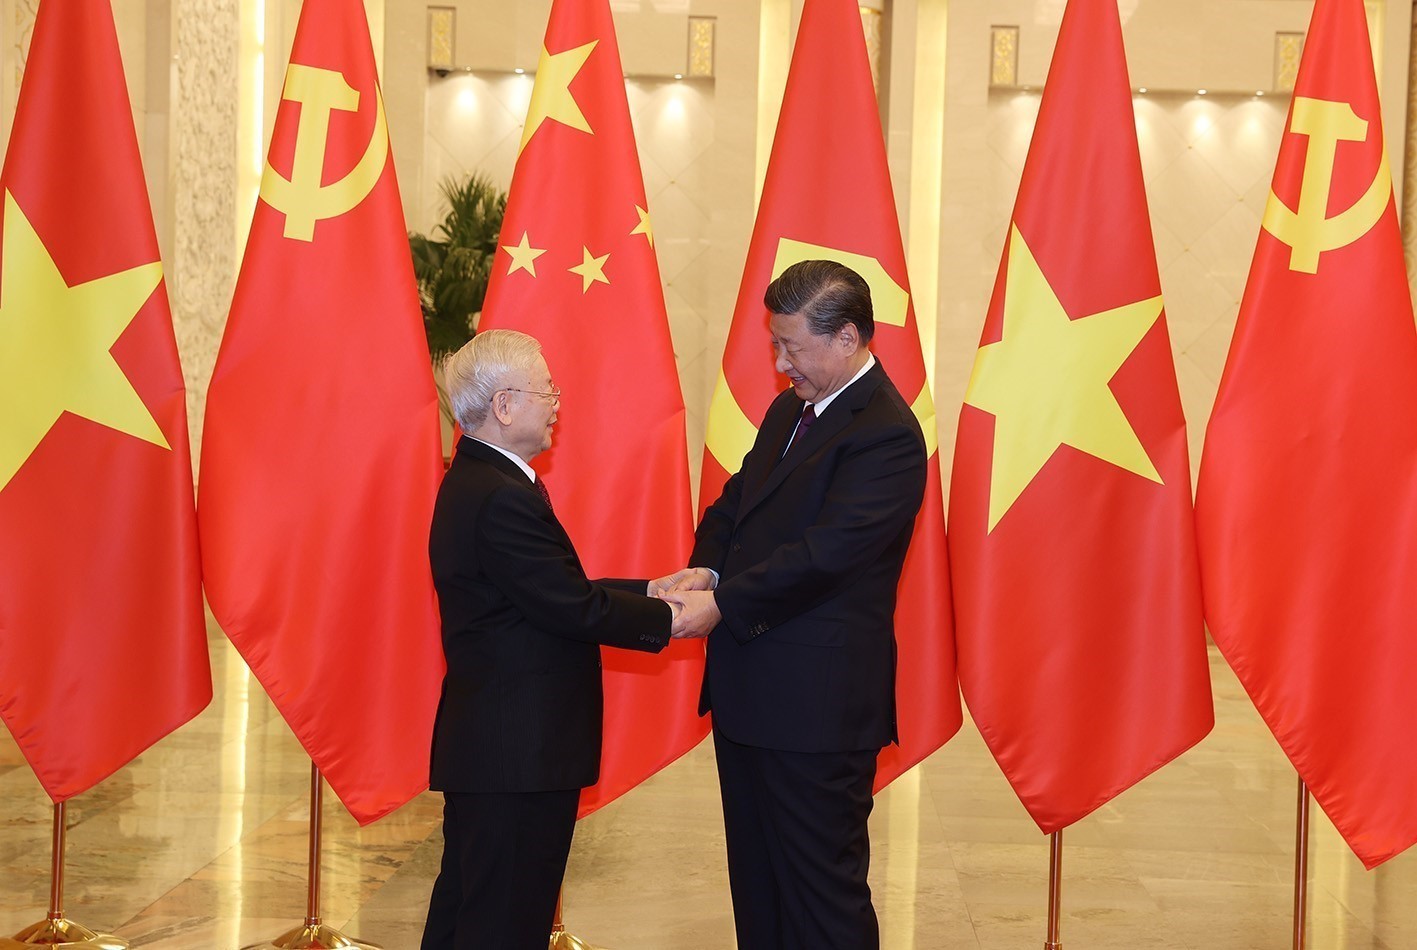 Tổng Bí thư Nguyễn Phú Trọng và Tổng Bí thư, Chủ tịch nước Trung Quốc Tập Cận Bình tại lễ đón Tổng Bí thư Nguyễn Phú Trọng thăm chính thức nước CHND Trung Hoa từ ngày 30/10-01/11/2022 - Ảnh: TTXVN